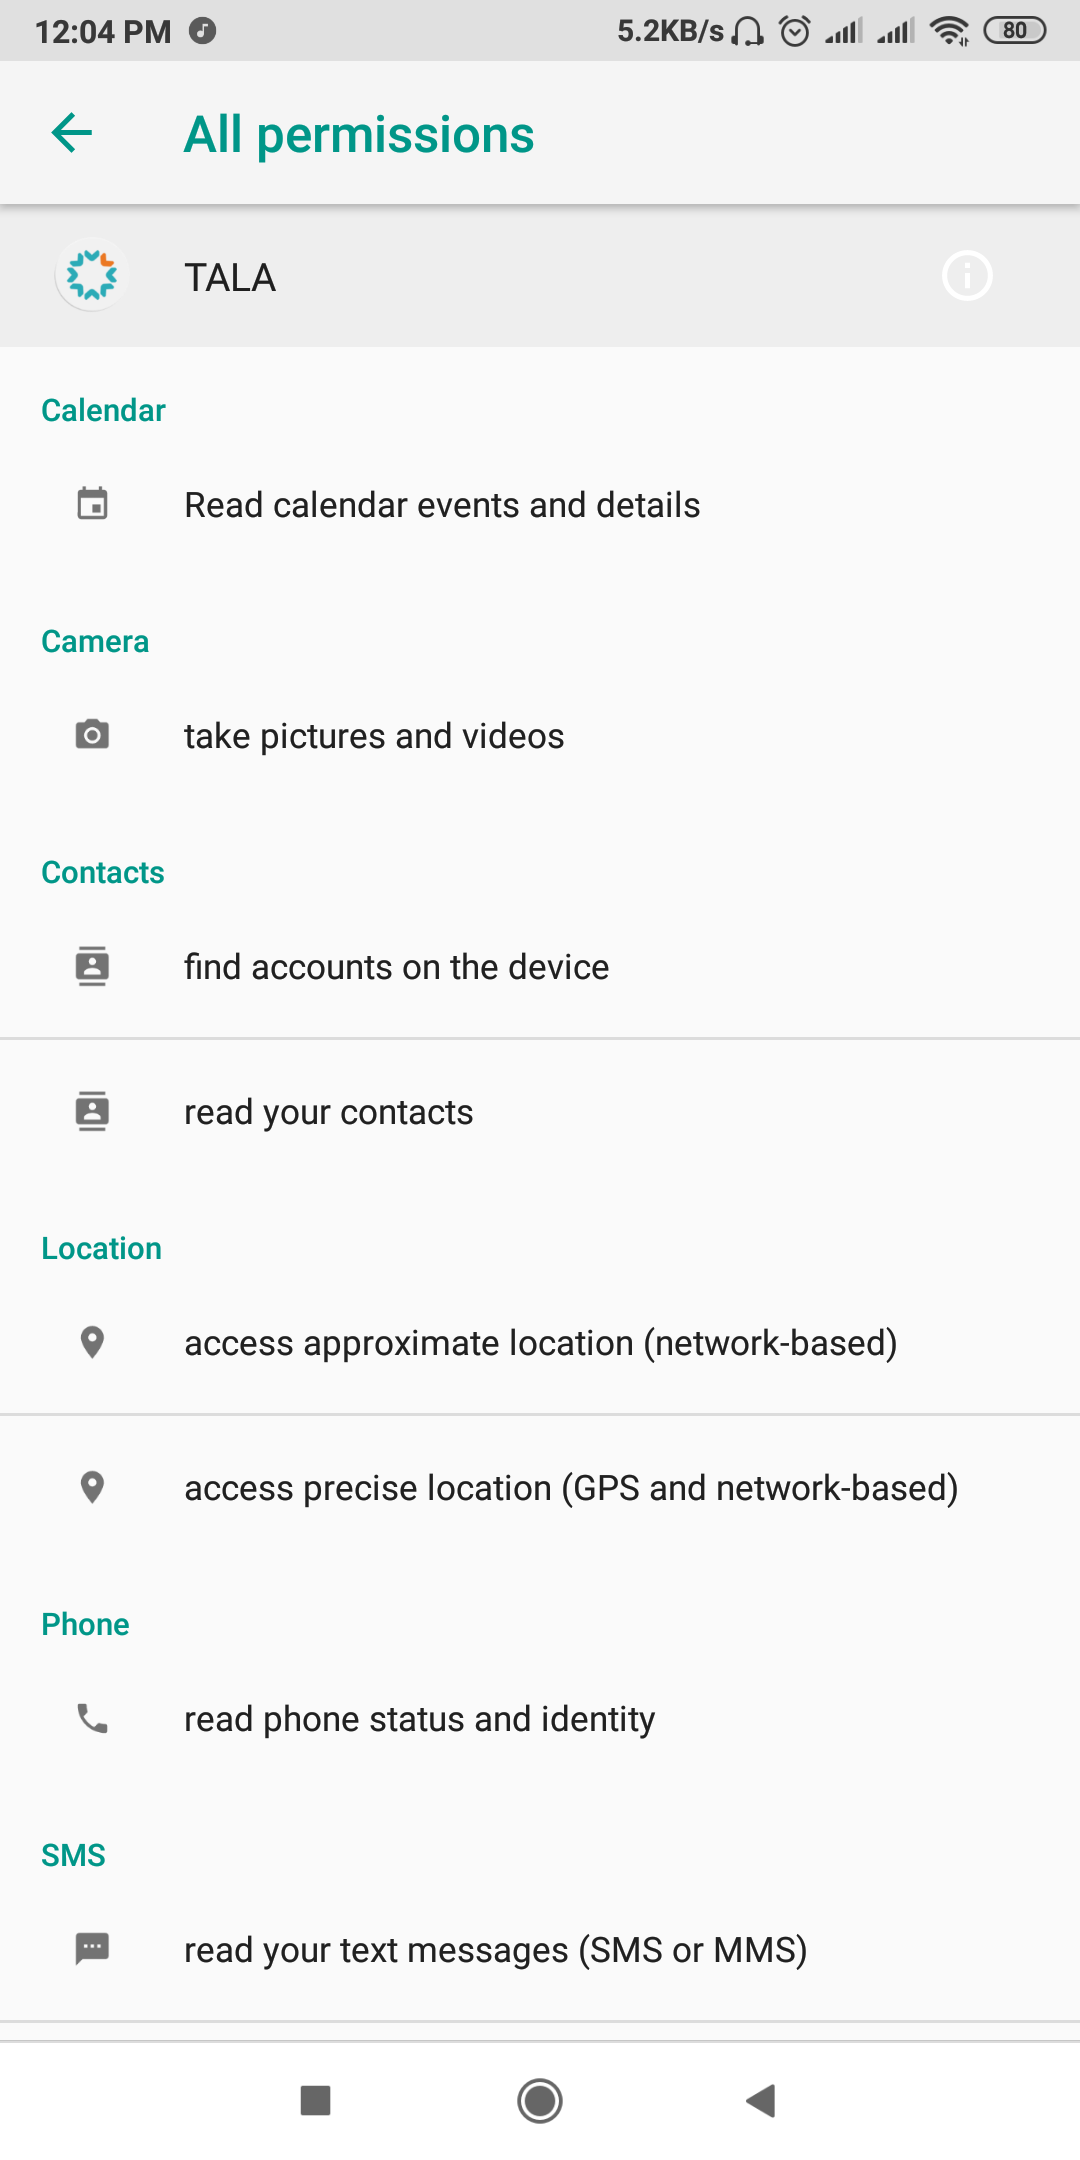 screenshot 2019 05 07 12 04 49 433 com.google.android.packageinstaller